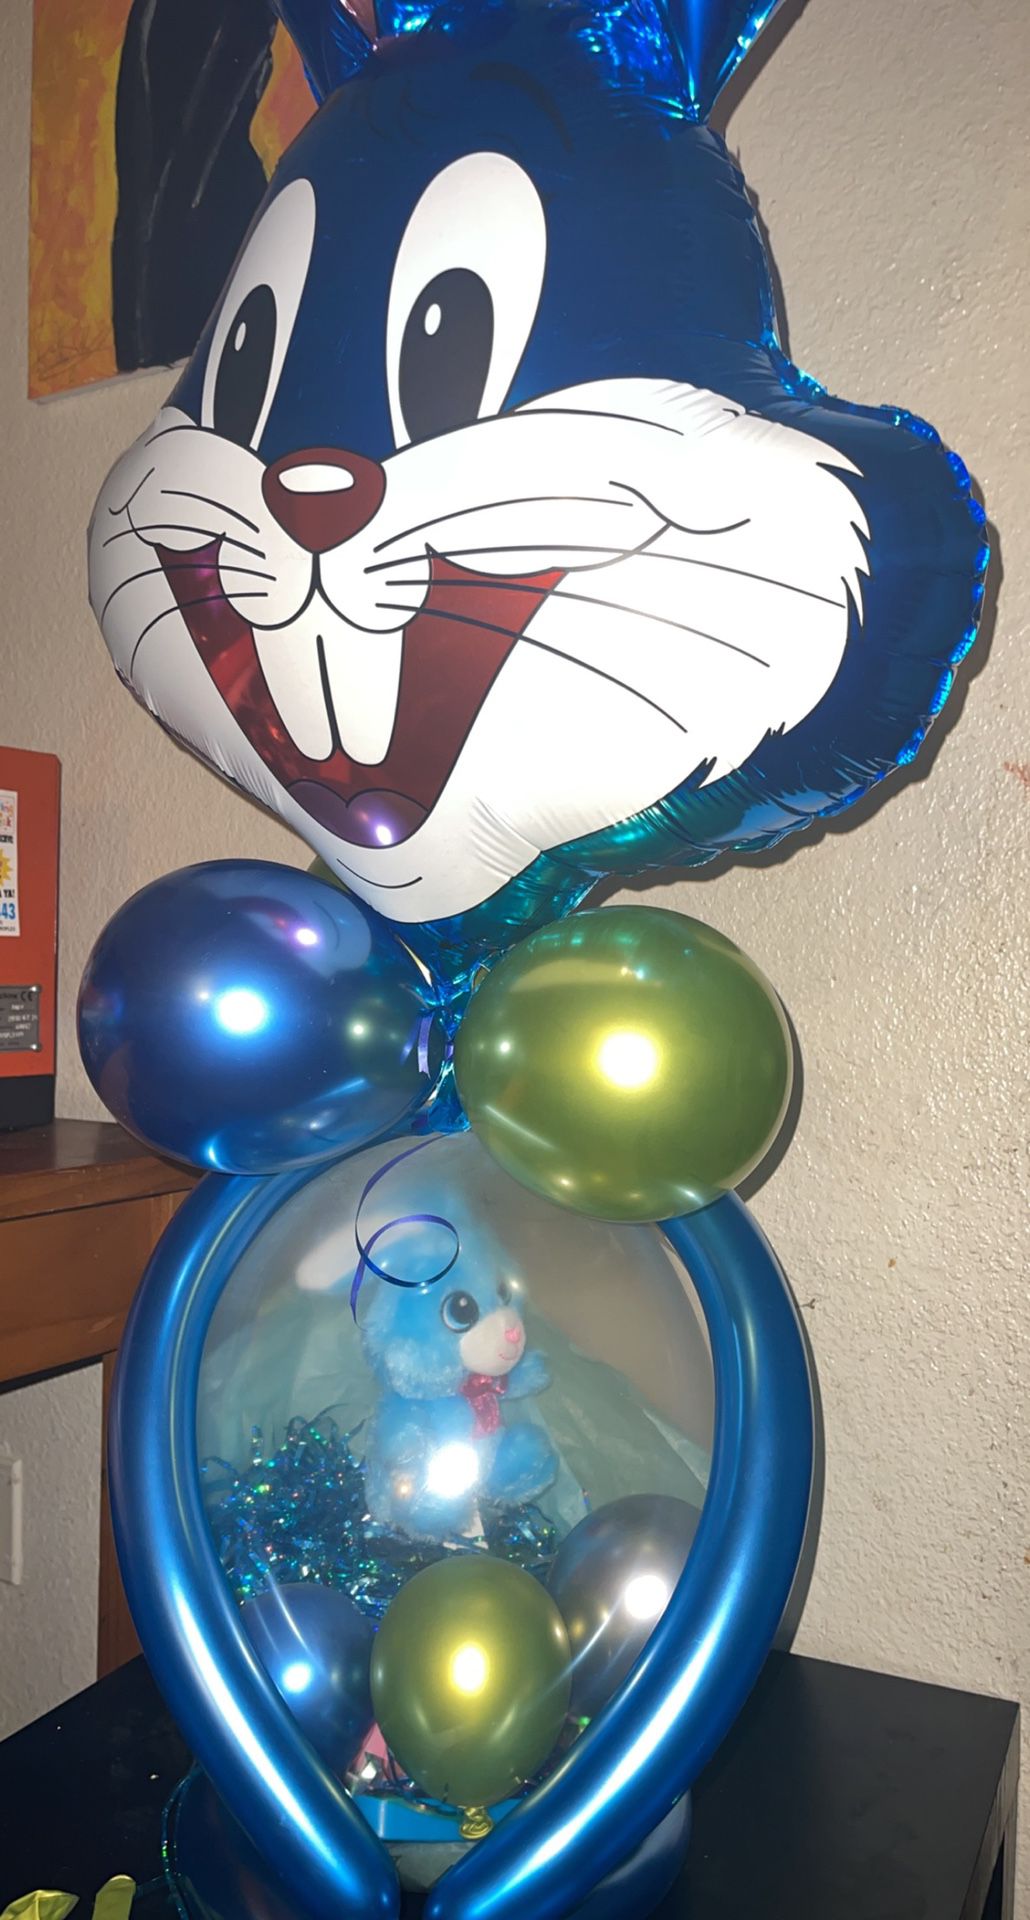 Stuff Balloons